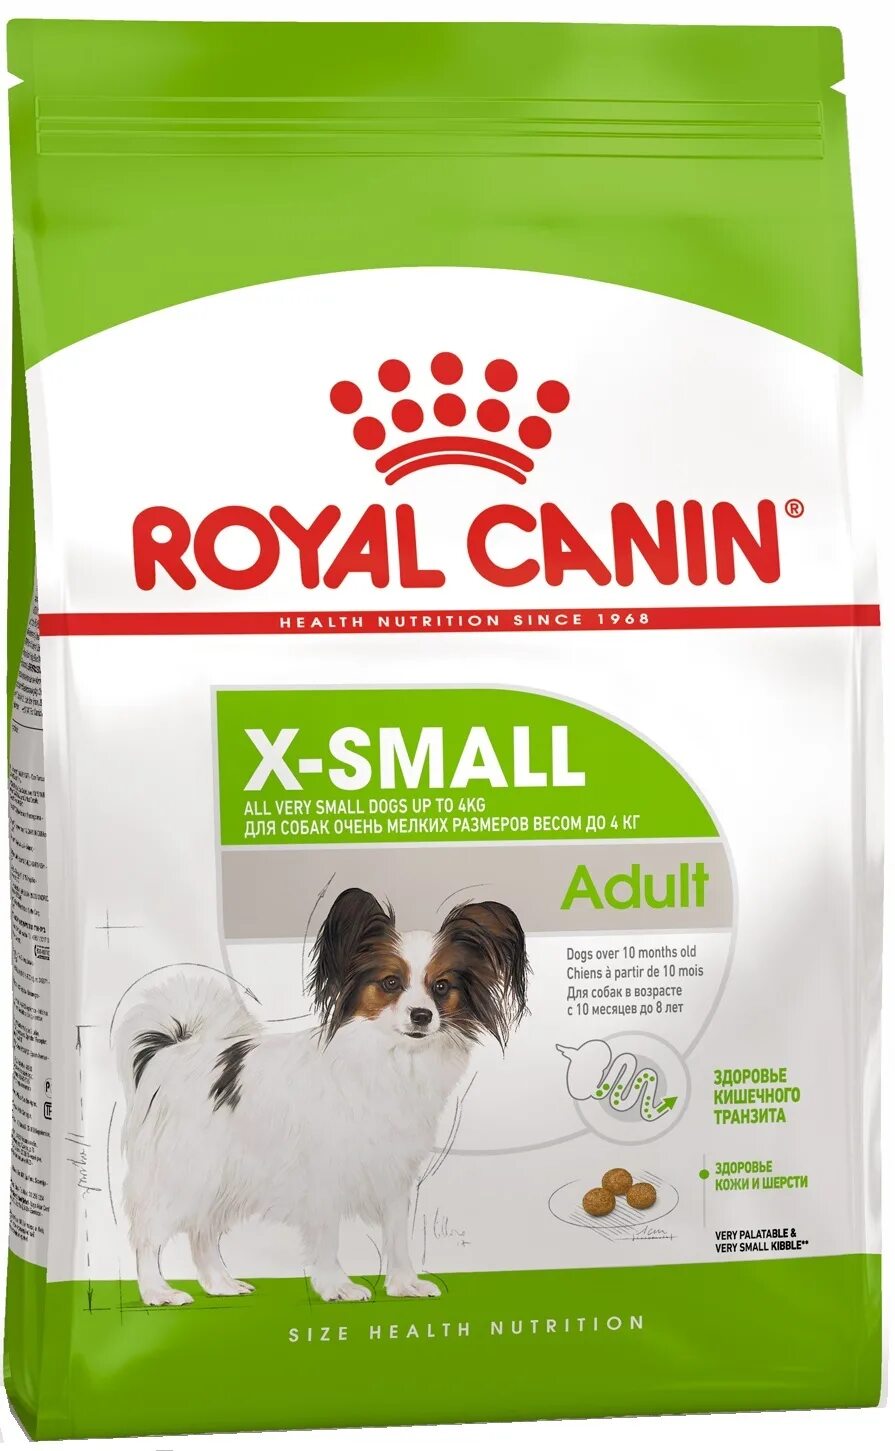 Сухой корм для карликовая собака. Роял Канин x small для собак. Royal Canin для собак XSMALL Adult 8+. Royal Canin (Роял Канин) x-small Adult 8+. Роял Канин для щенков x small 10.